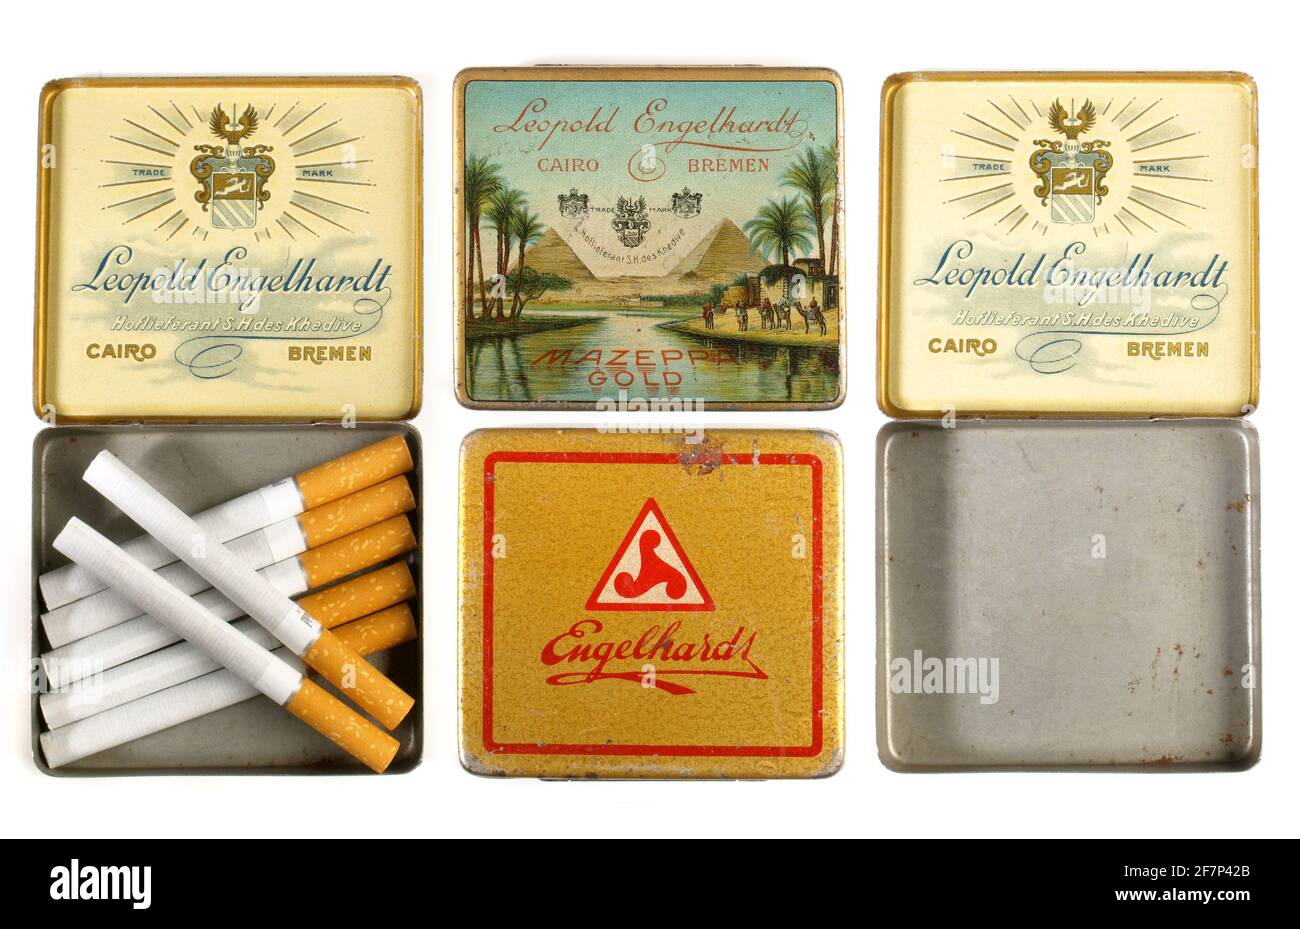 Antique and Vintage Cigarette Cases